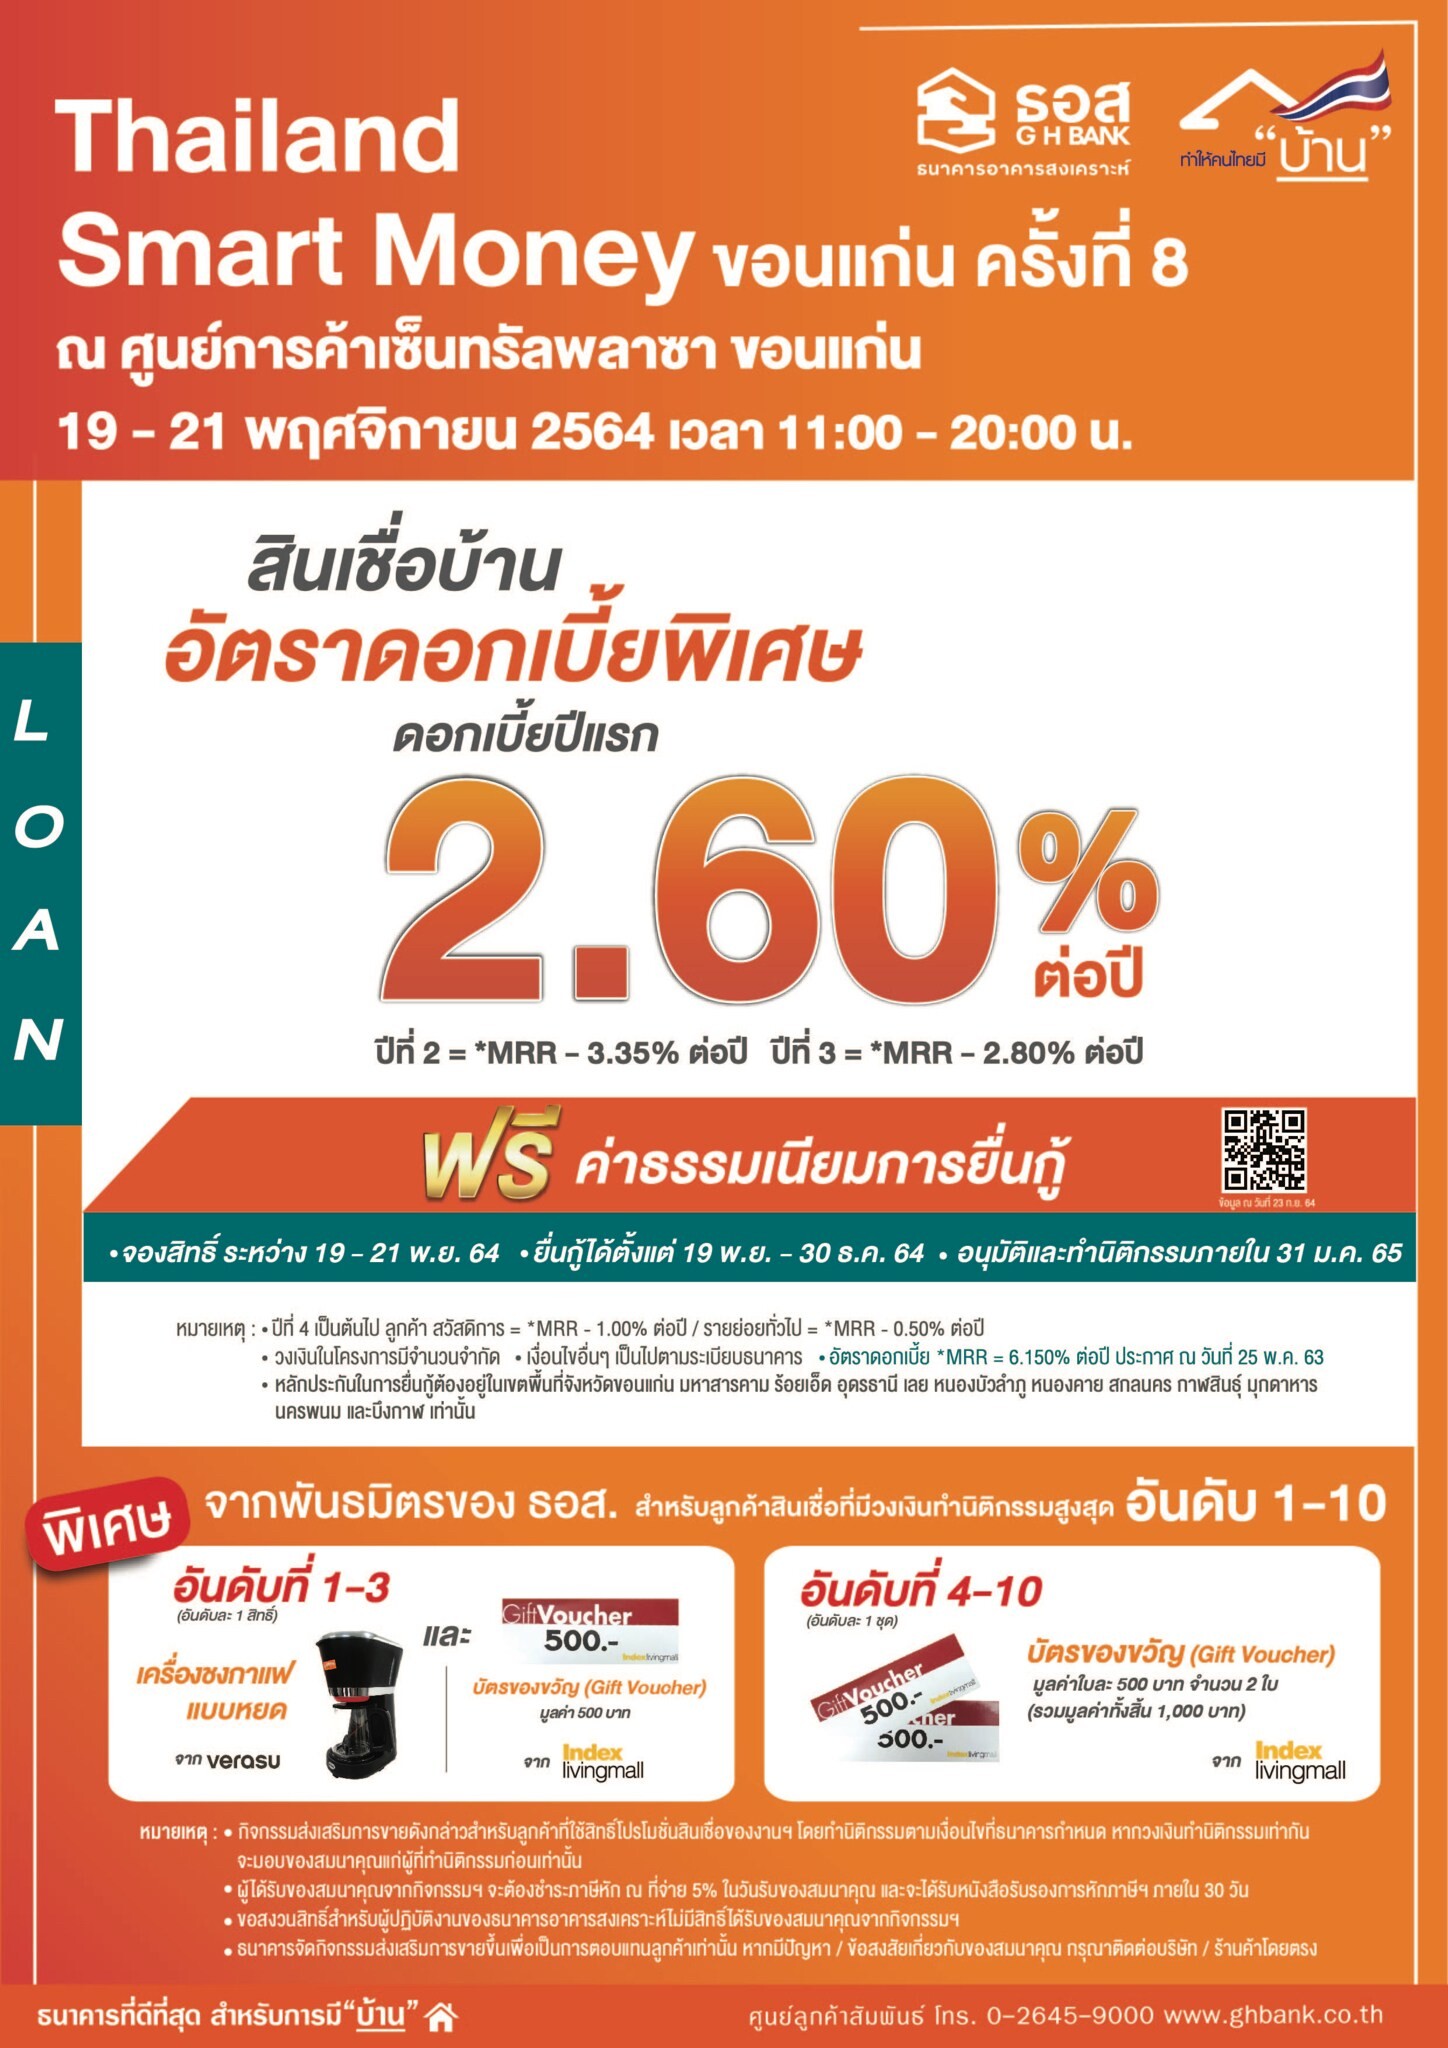 ธอส.ขนโปรโมชั่นเอาใจชาวอีสาน กับสินเชื่อบ้านอัตราดอกเบี้ยคงที่ปีแรก 2.60% ต่อปี บ้านมือสองผ่อนดาวน์ดอกเบี้ย 0% นานสูงสุดถึง 24 เดือน   ที่งาน "Thailand Smart Money 2021 ขอนแก่น ครั้งที่ 8"